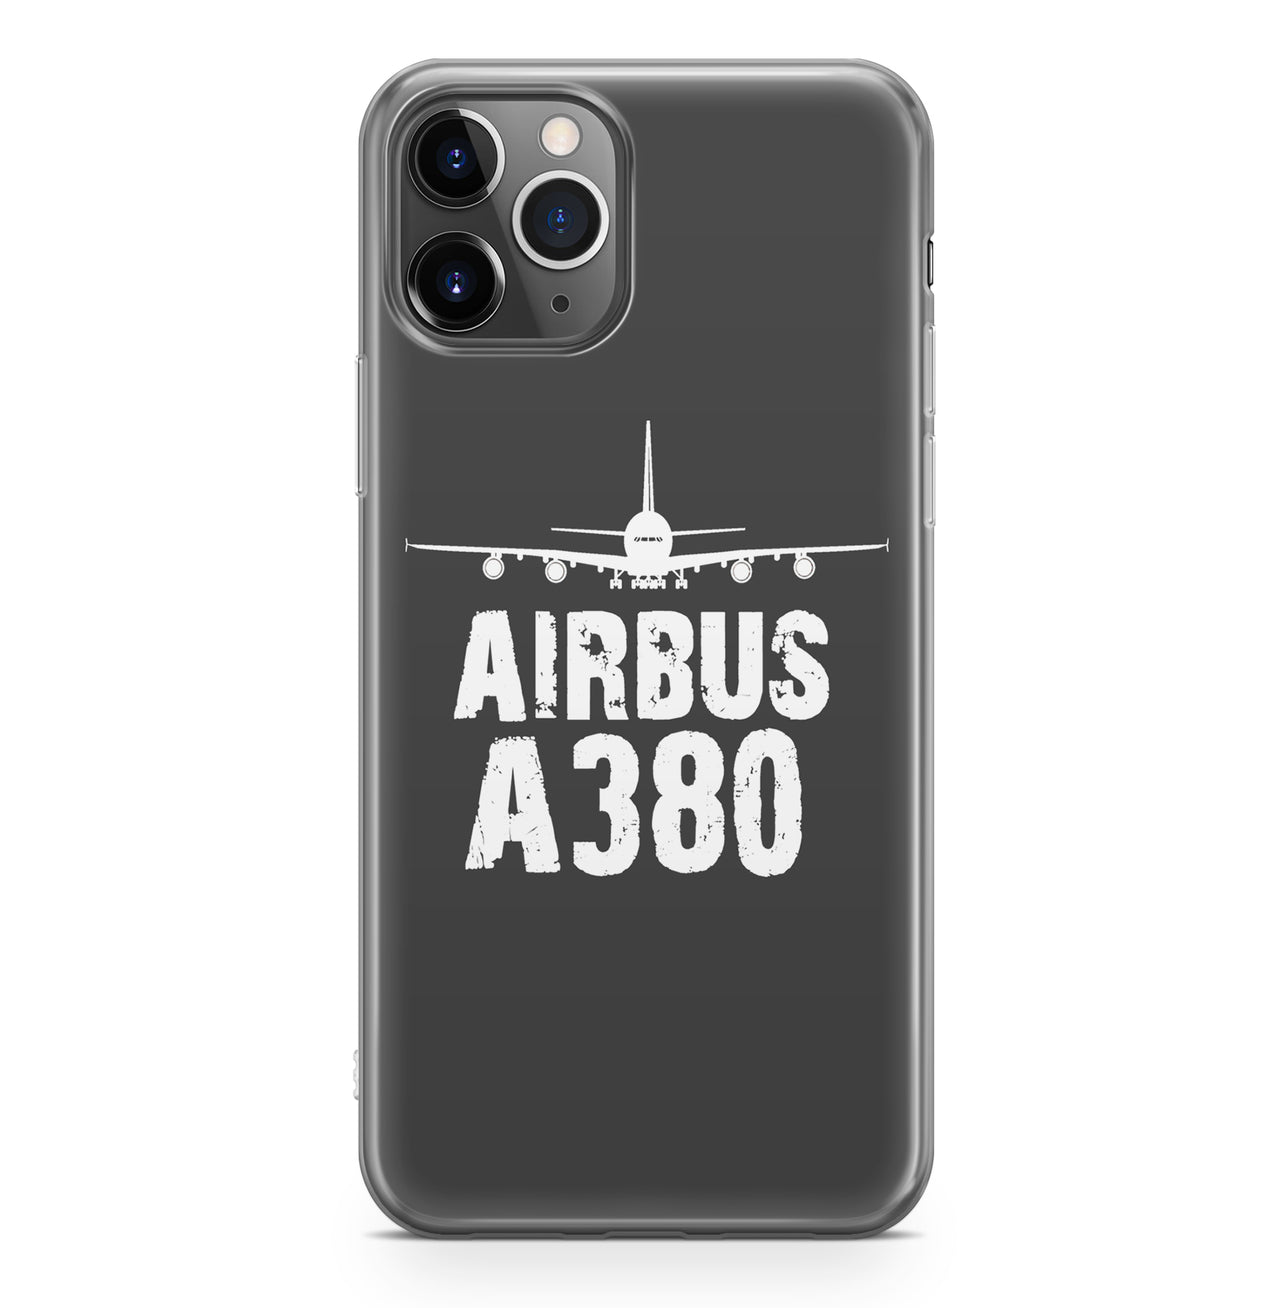 Airbus A380 & Plane Designed iPhone Cases